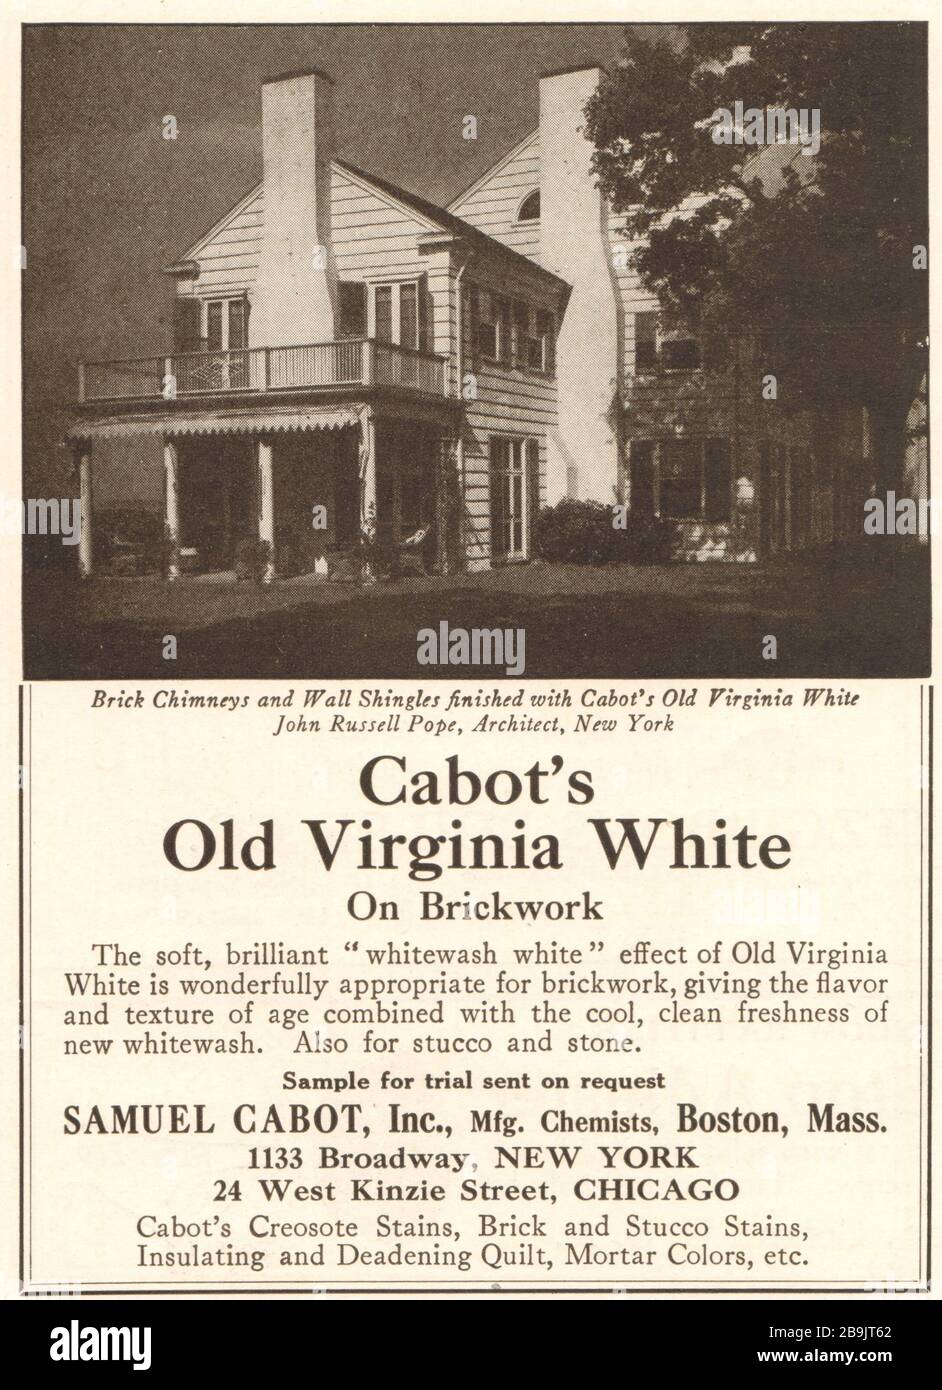 Cheminées et bardeaux finalisés avec le blanc de Cabot's Old Virginia; John Russell Popper, architecte, New York. Samuel Cabot, Inc. Chimistes, Boston (1921) Banque D'Images